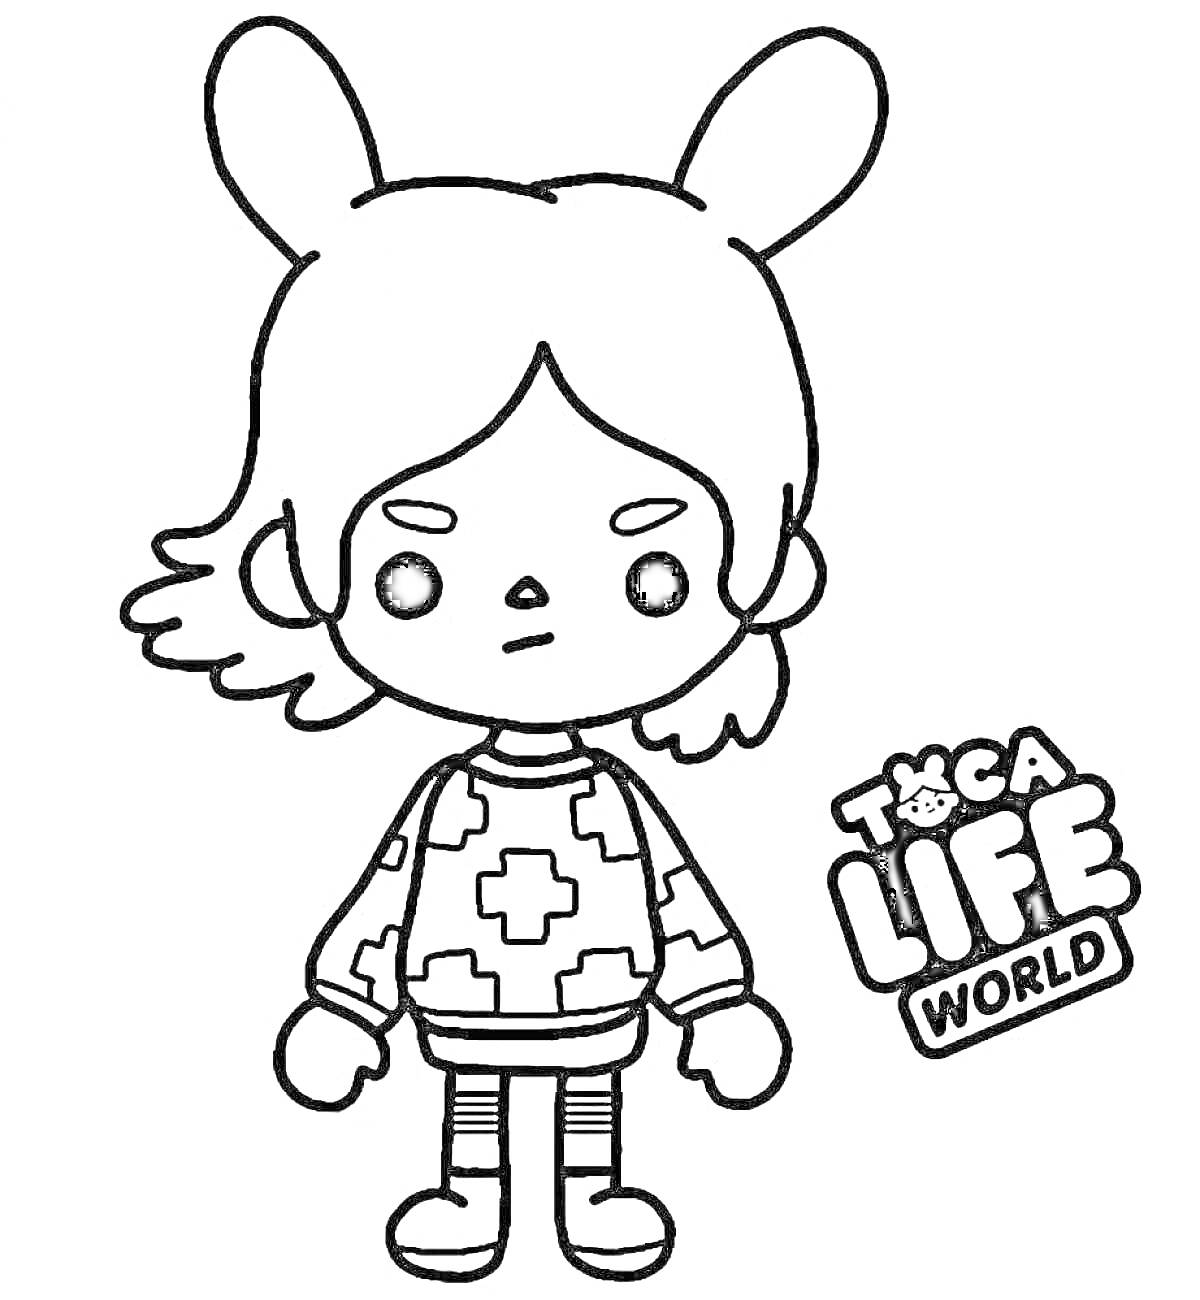 Раскраска Персонаж с ушками в свитере из игры Toca Life World